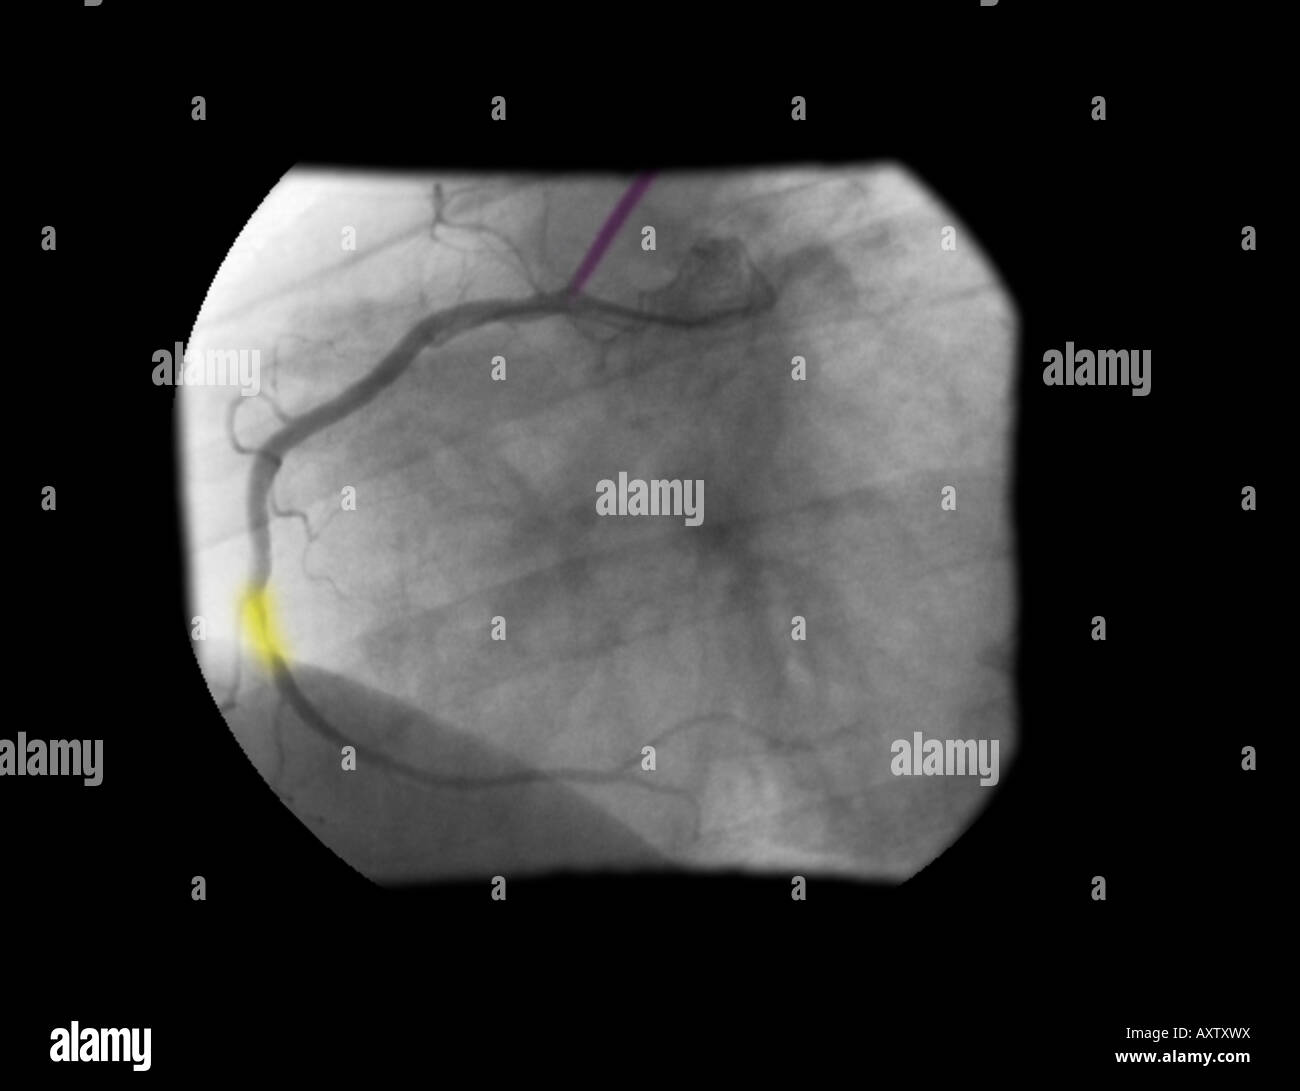 In modo digitale avanzata, colorizzato raggi x di un angiogramma coronarico la stenosi dell'arteria coronaria destra Foto Stock